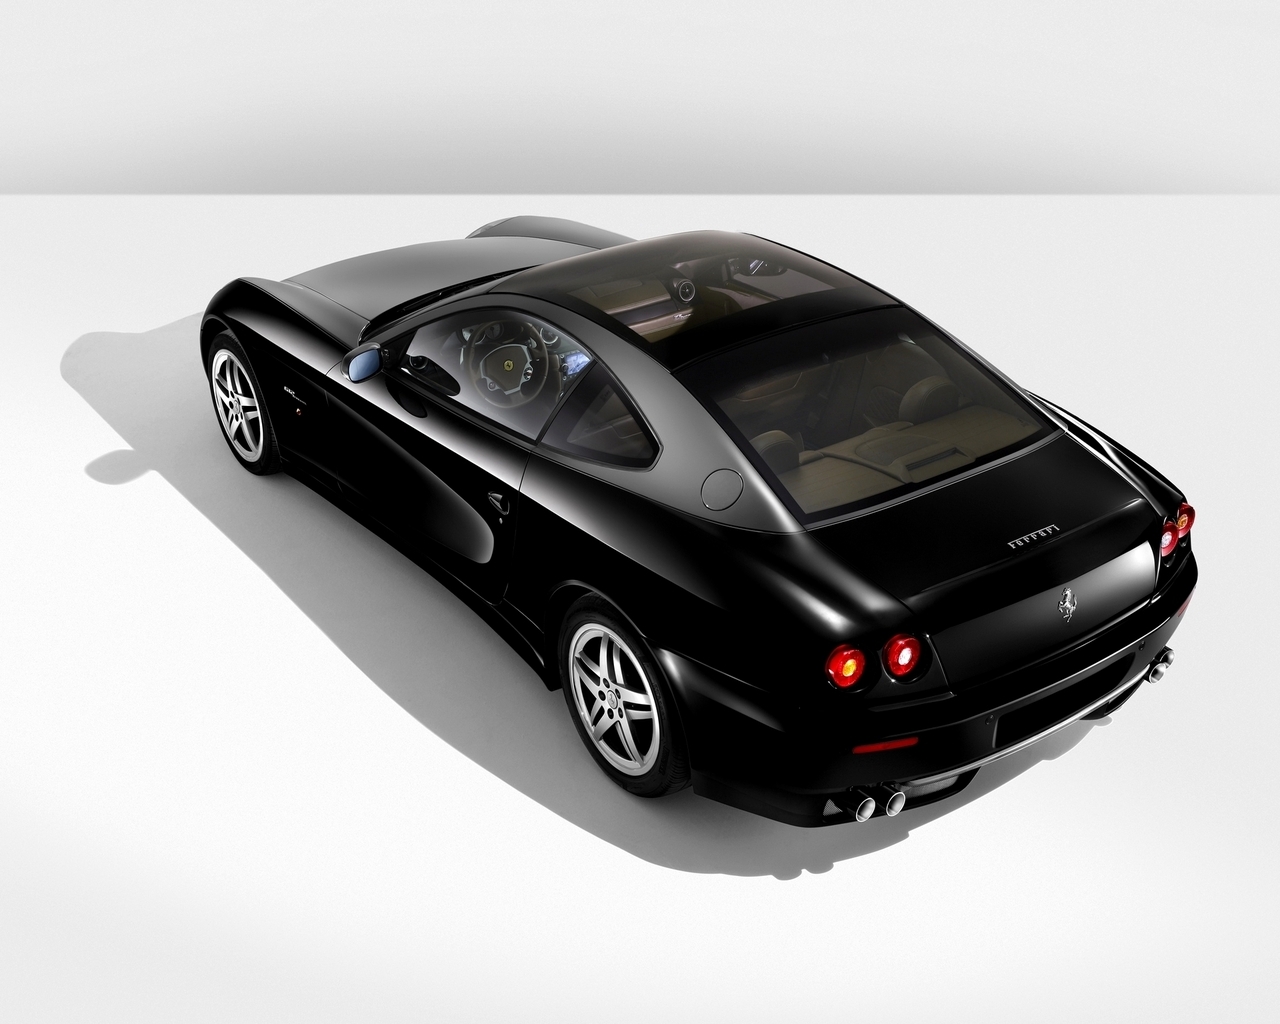 Ferrari 612 Black for 1280 x 1024 resolution